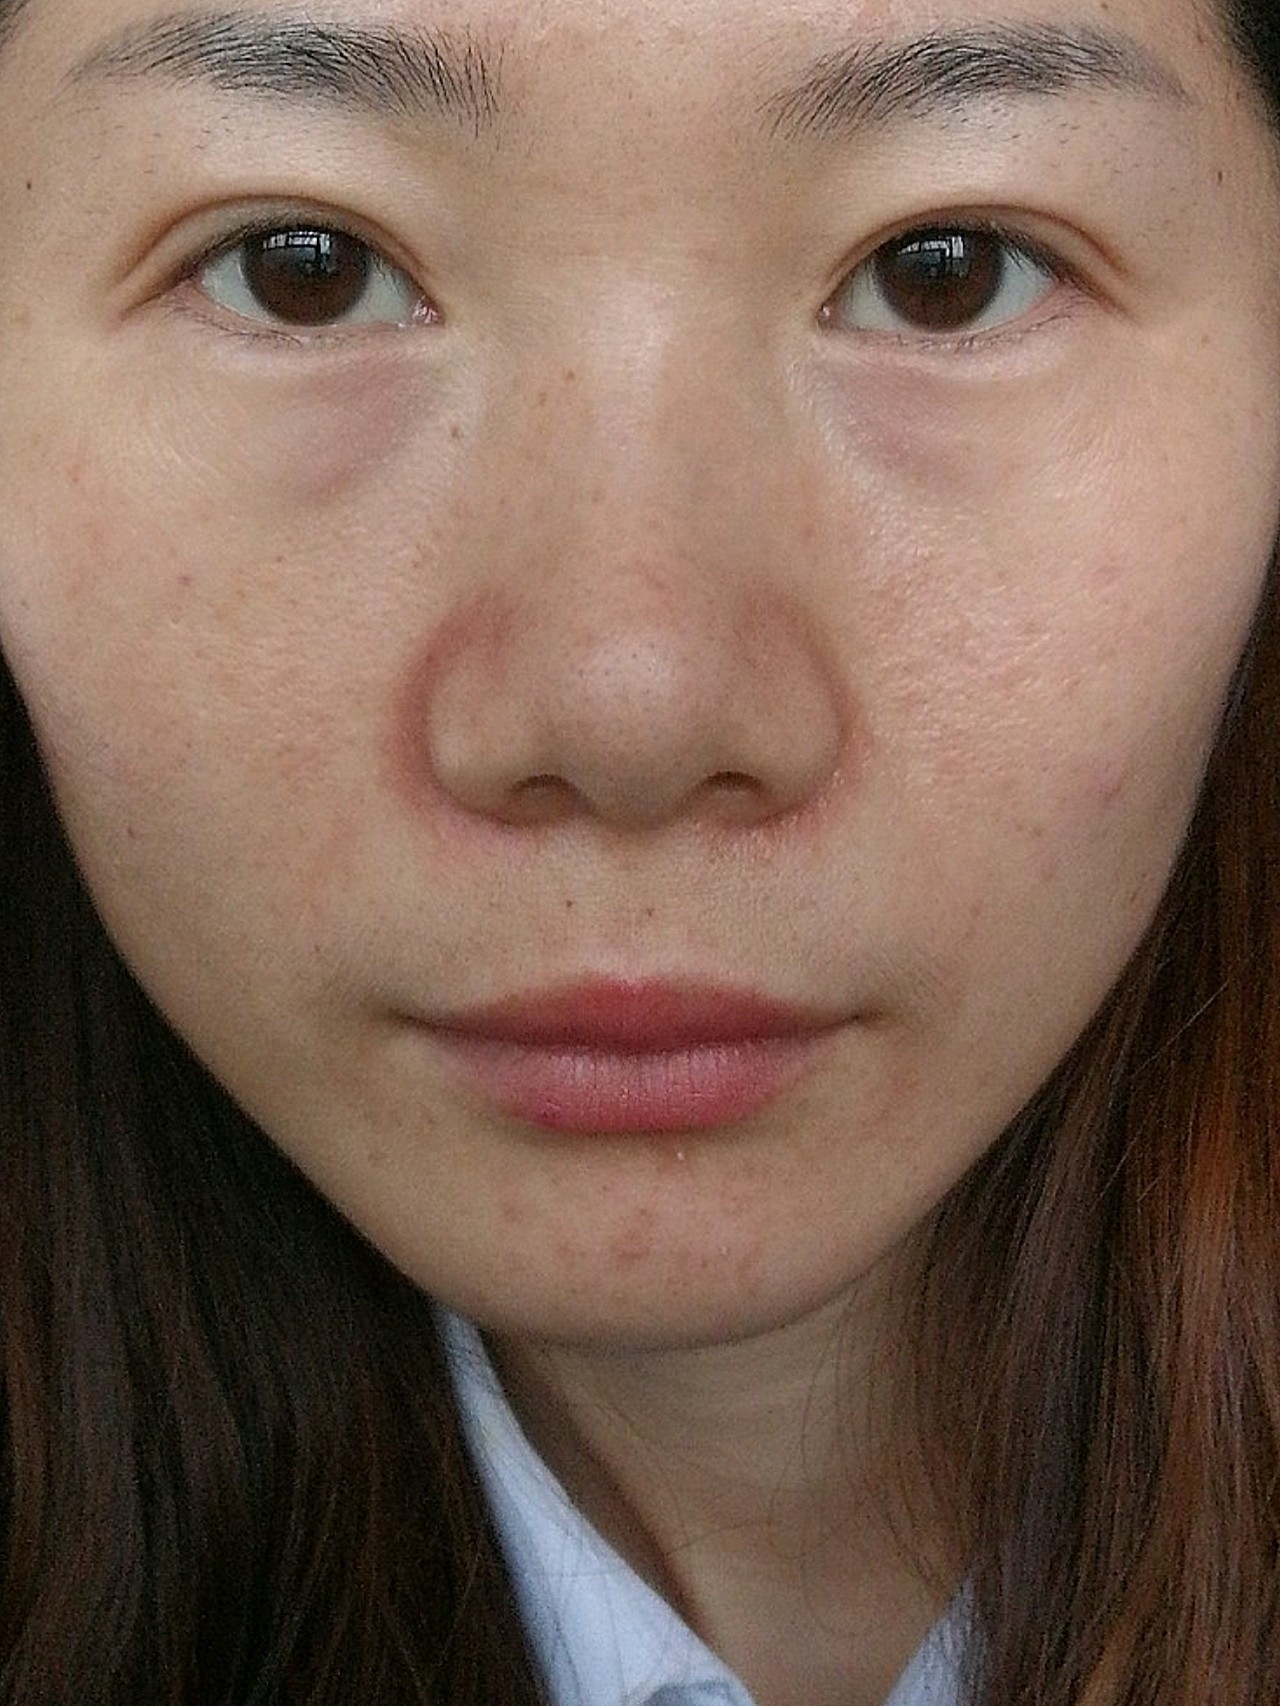 23周岁,脸部脂肪少,显得特别老,眼部比较容易长斑